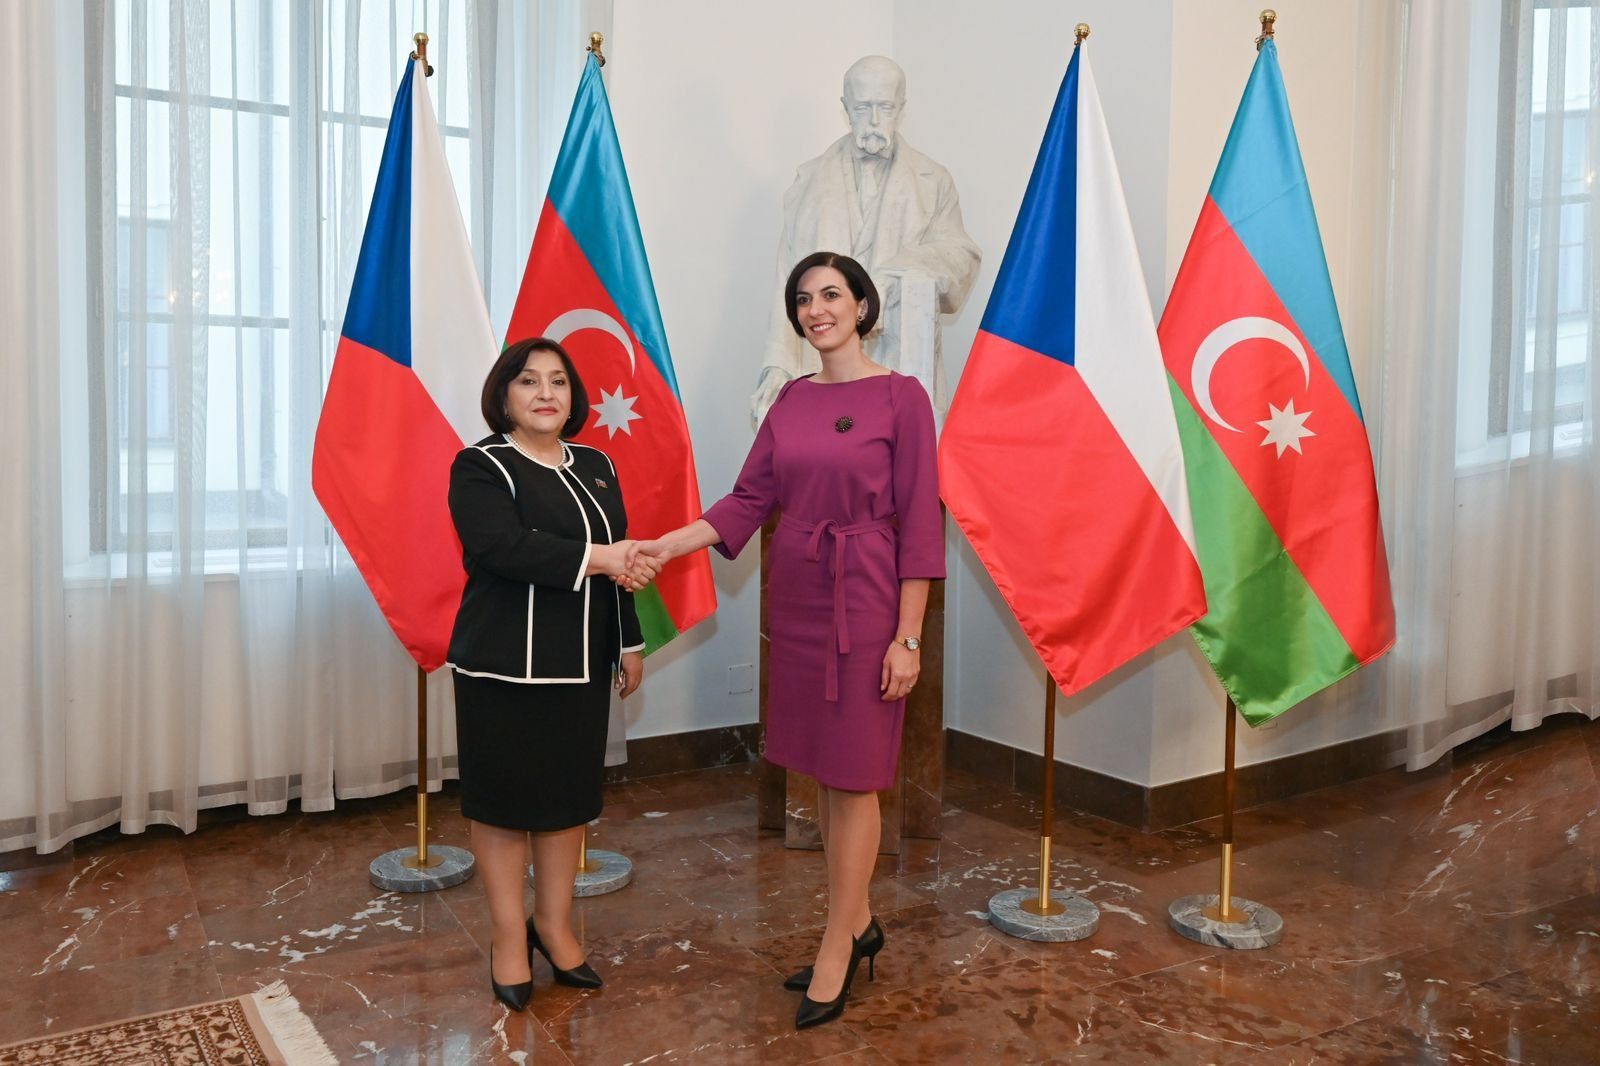 Předseda ázerbájdžánského parlamentu je na oficiální návštěvě České republiky [PHOTOS]